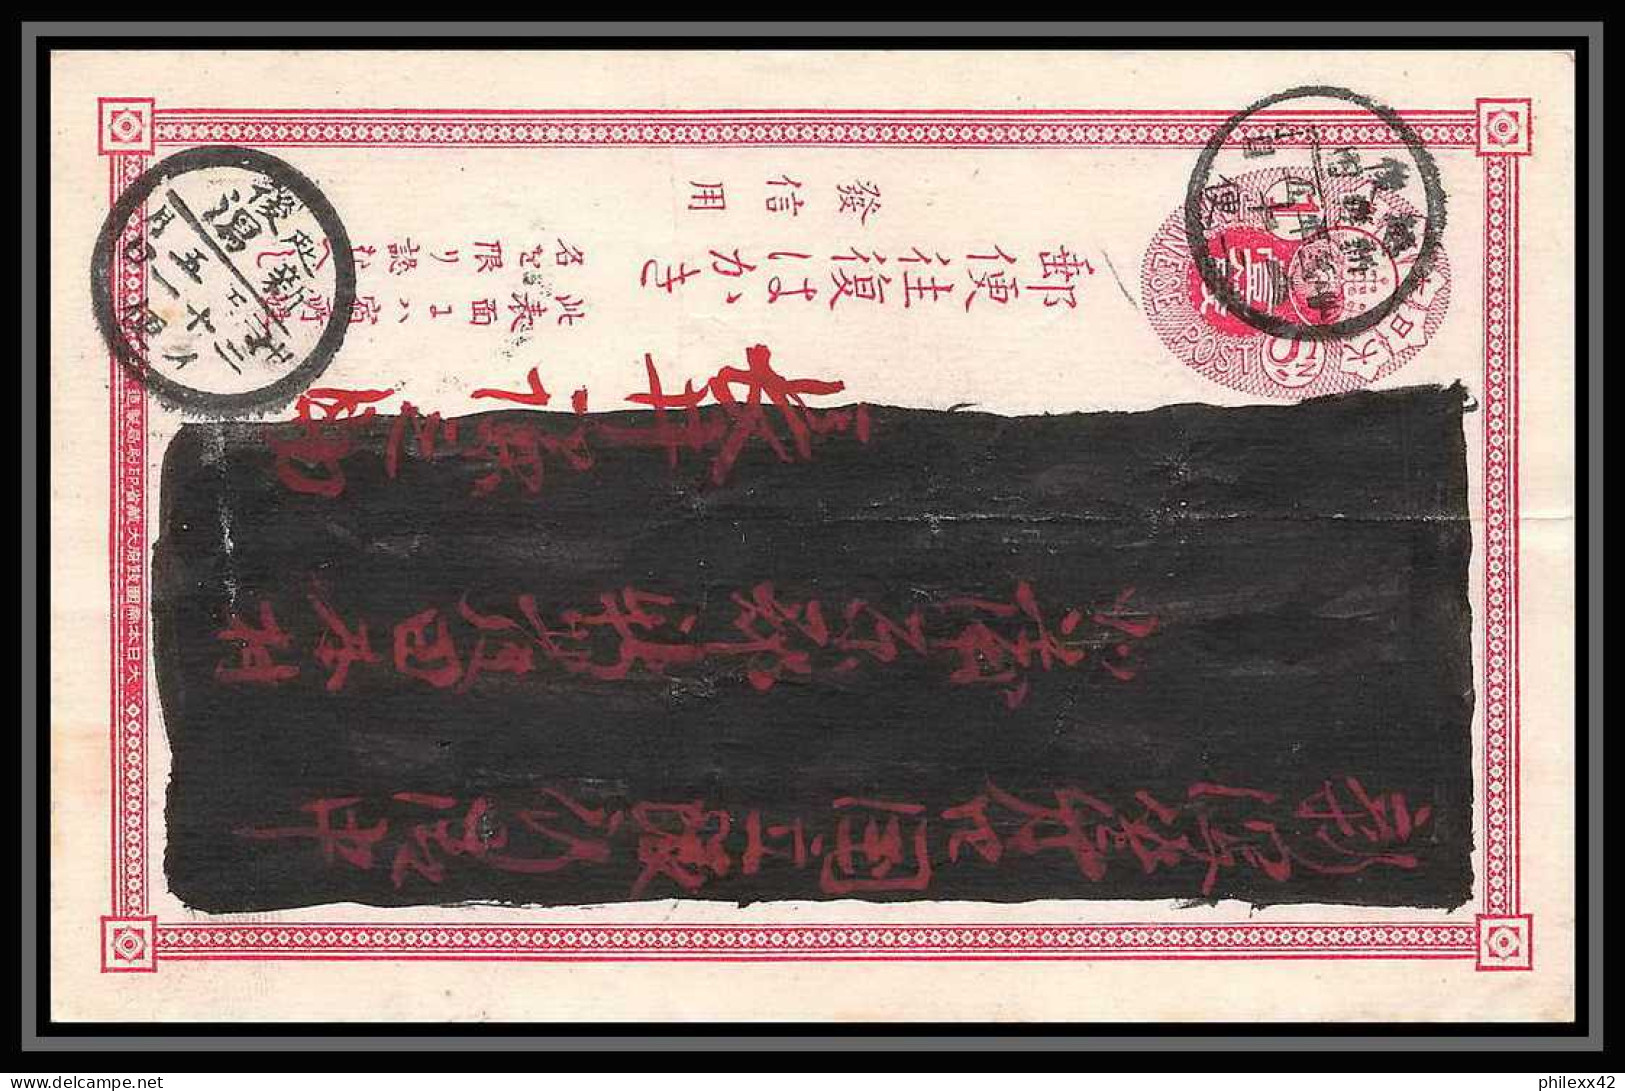 2054/ Japon (Japan) lot de 12 Entiers Stationery Carte postale (postcard) 1 sen red type 1885 1 